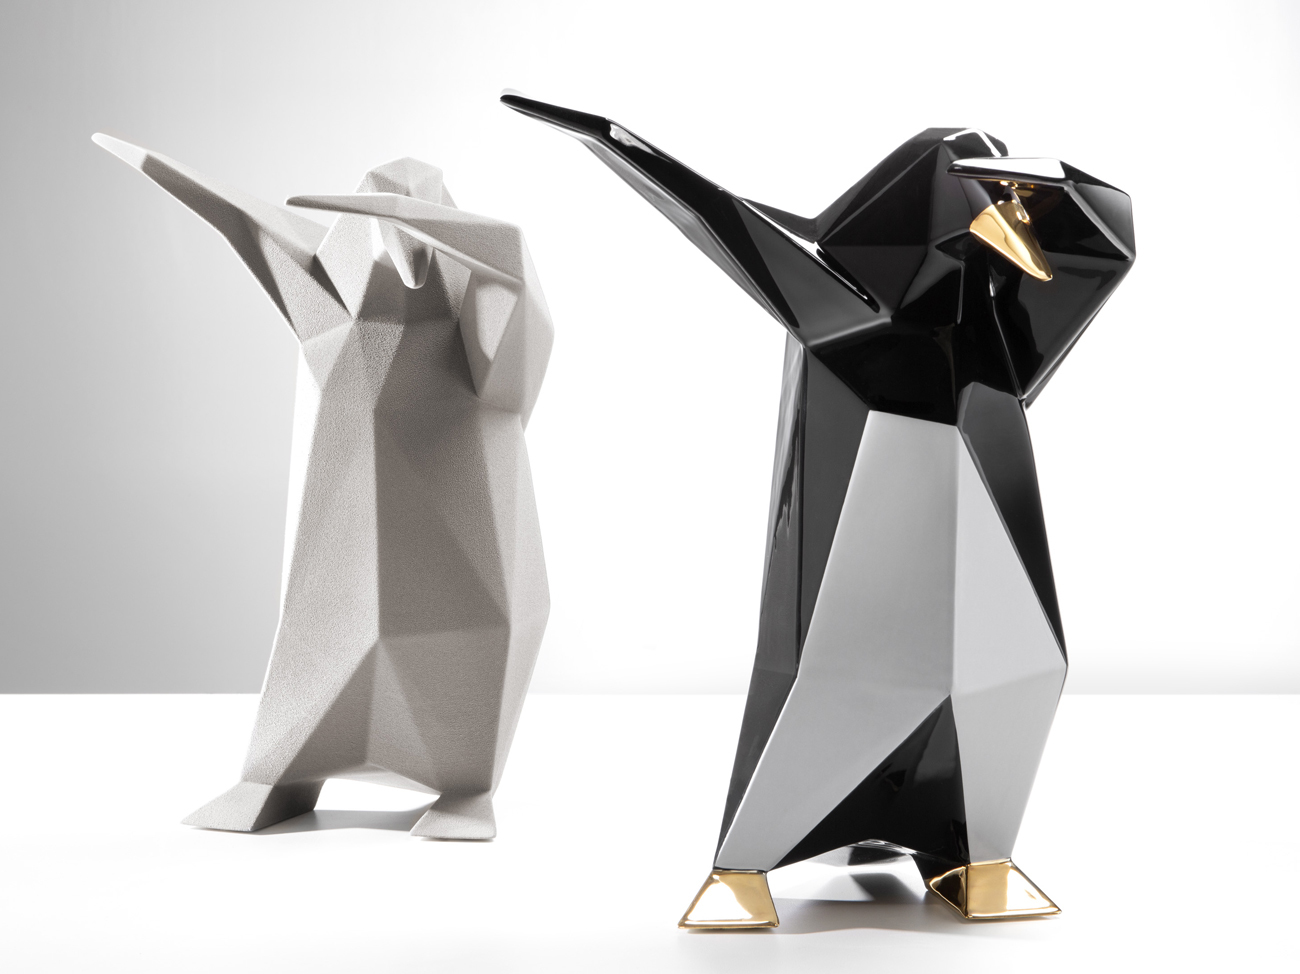 Soy un pingüino y molo todo. Eso parece decir esta pequeña escultura...